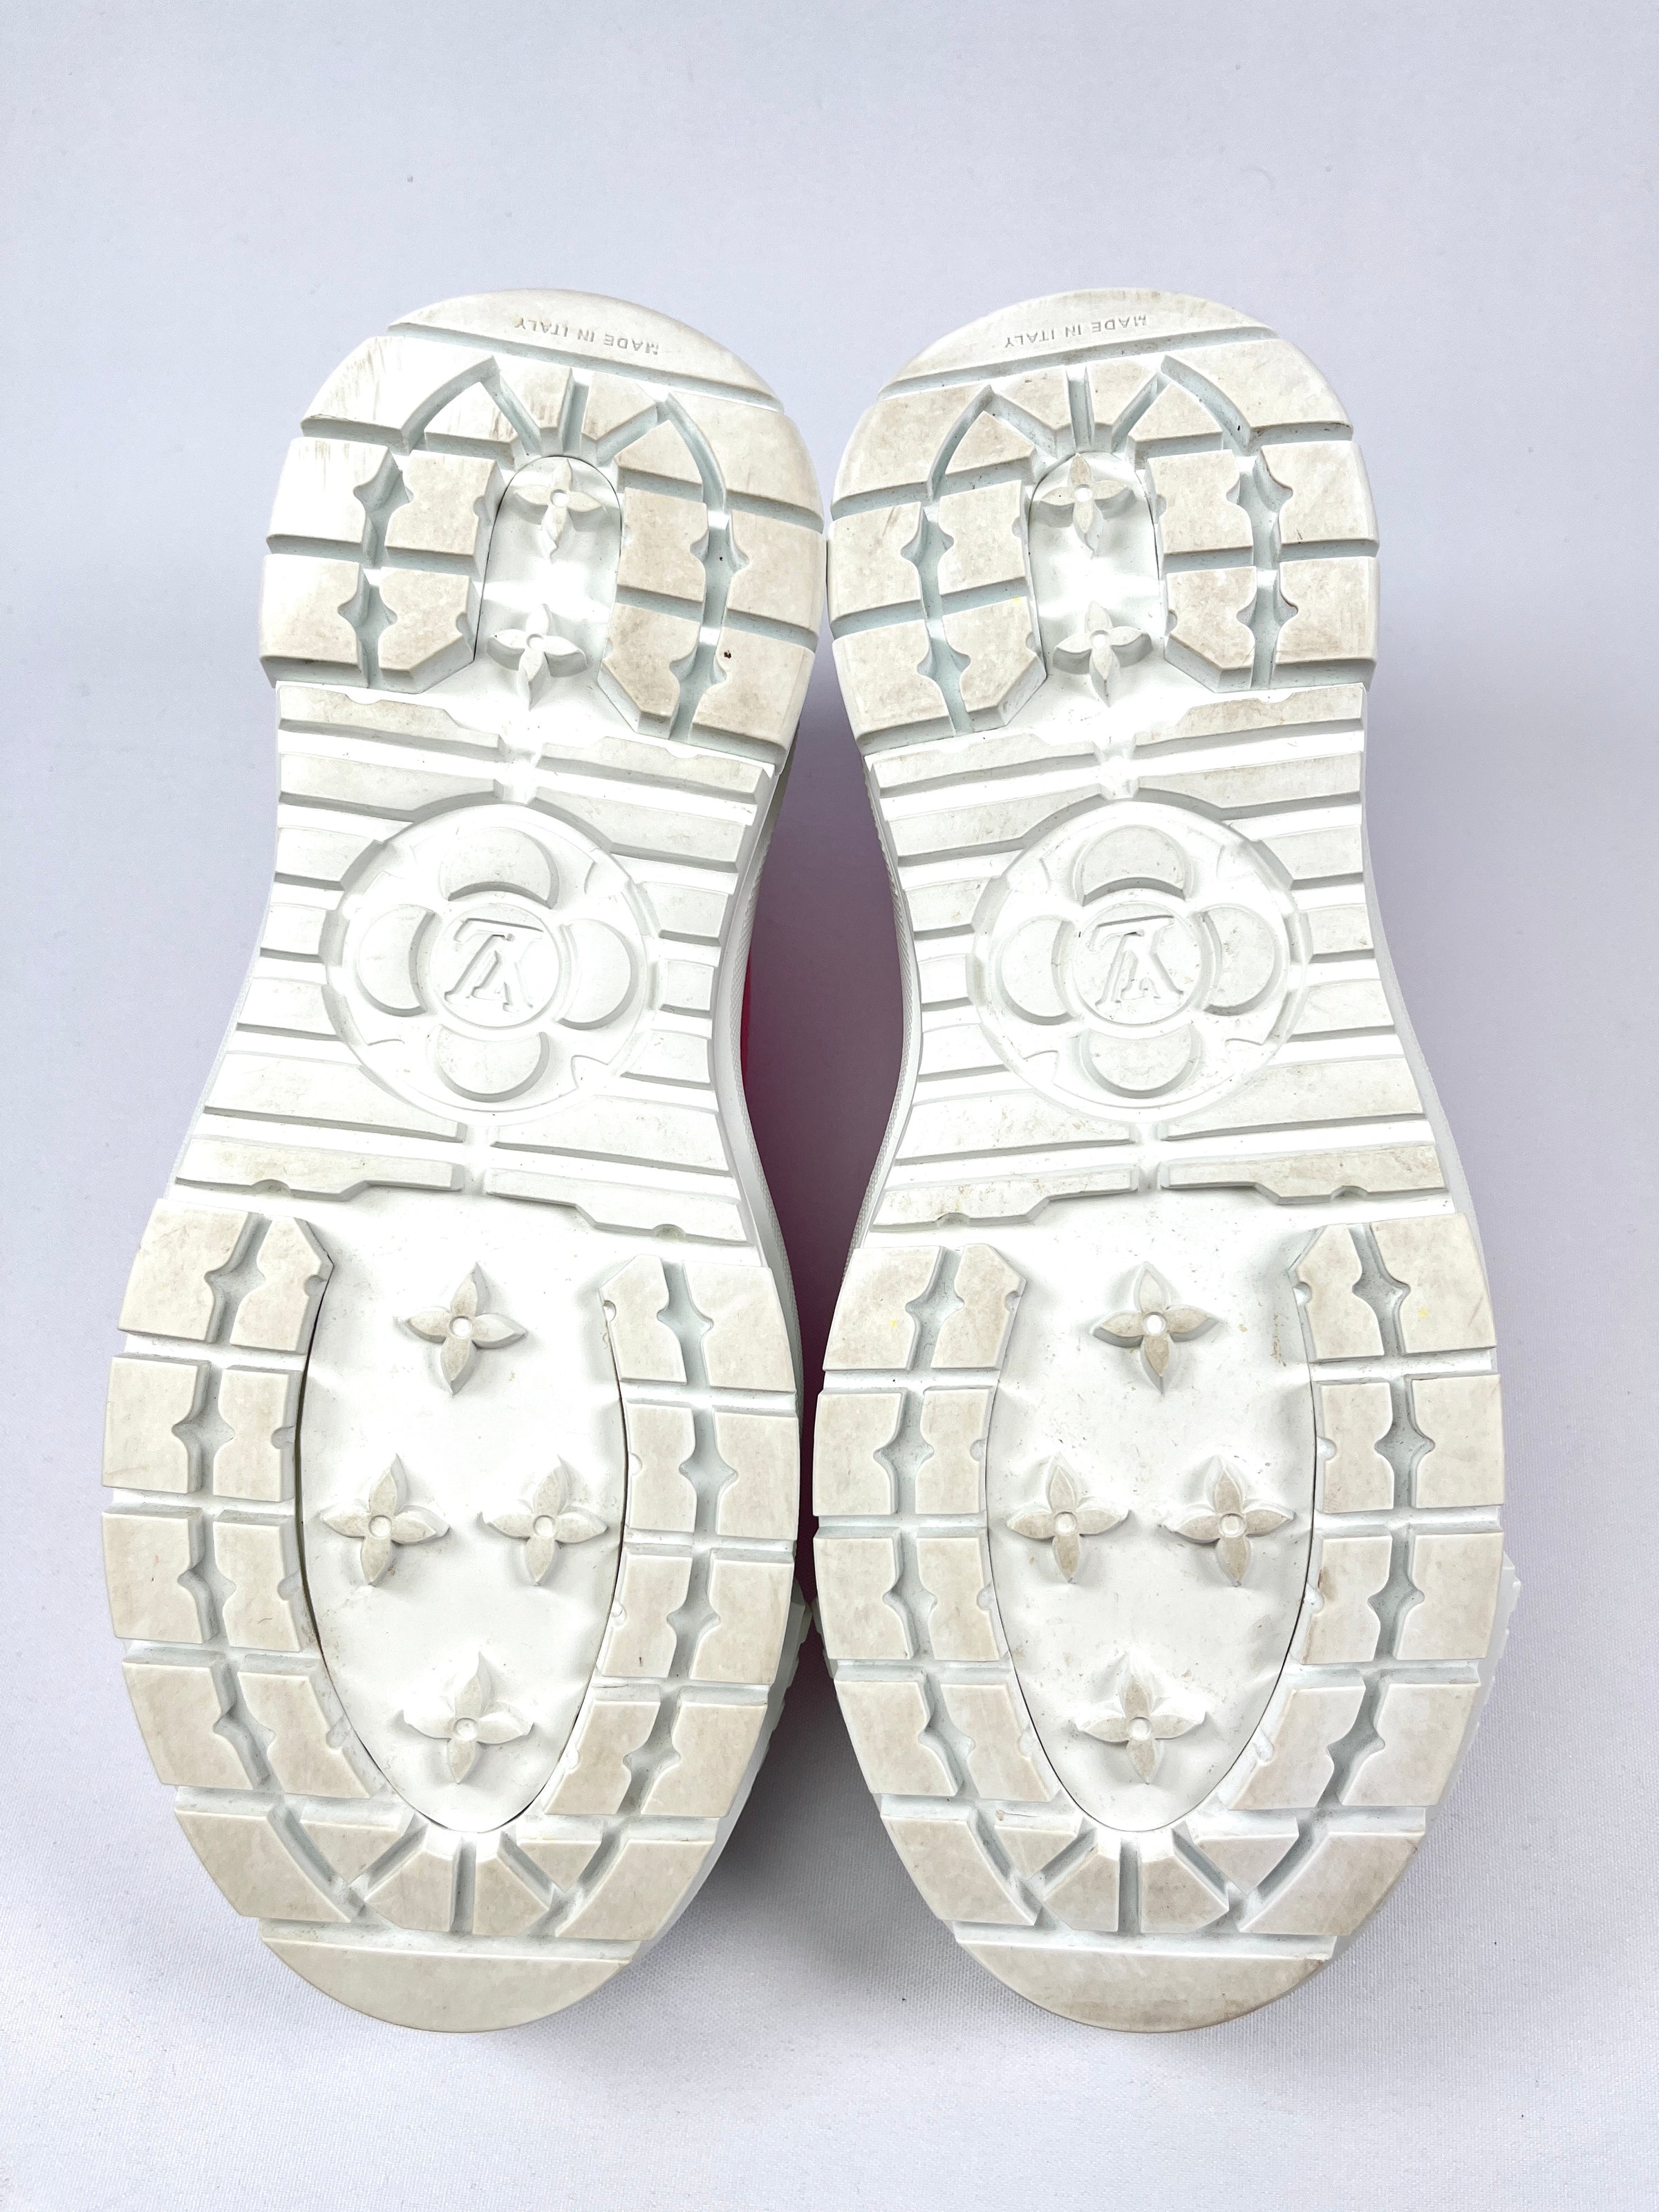 Louis Vuitton Sneakers aus Segeltuch - Rosa - Größe 7 - 27478972